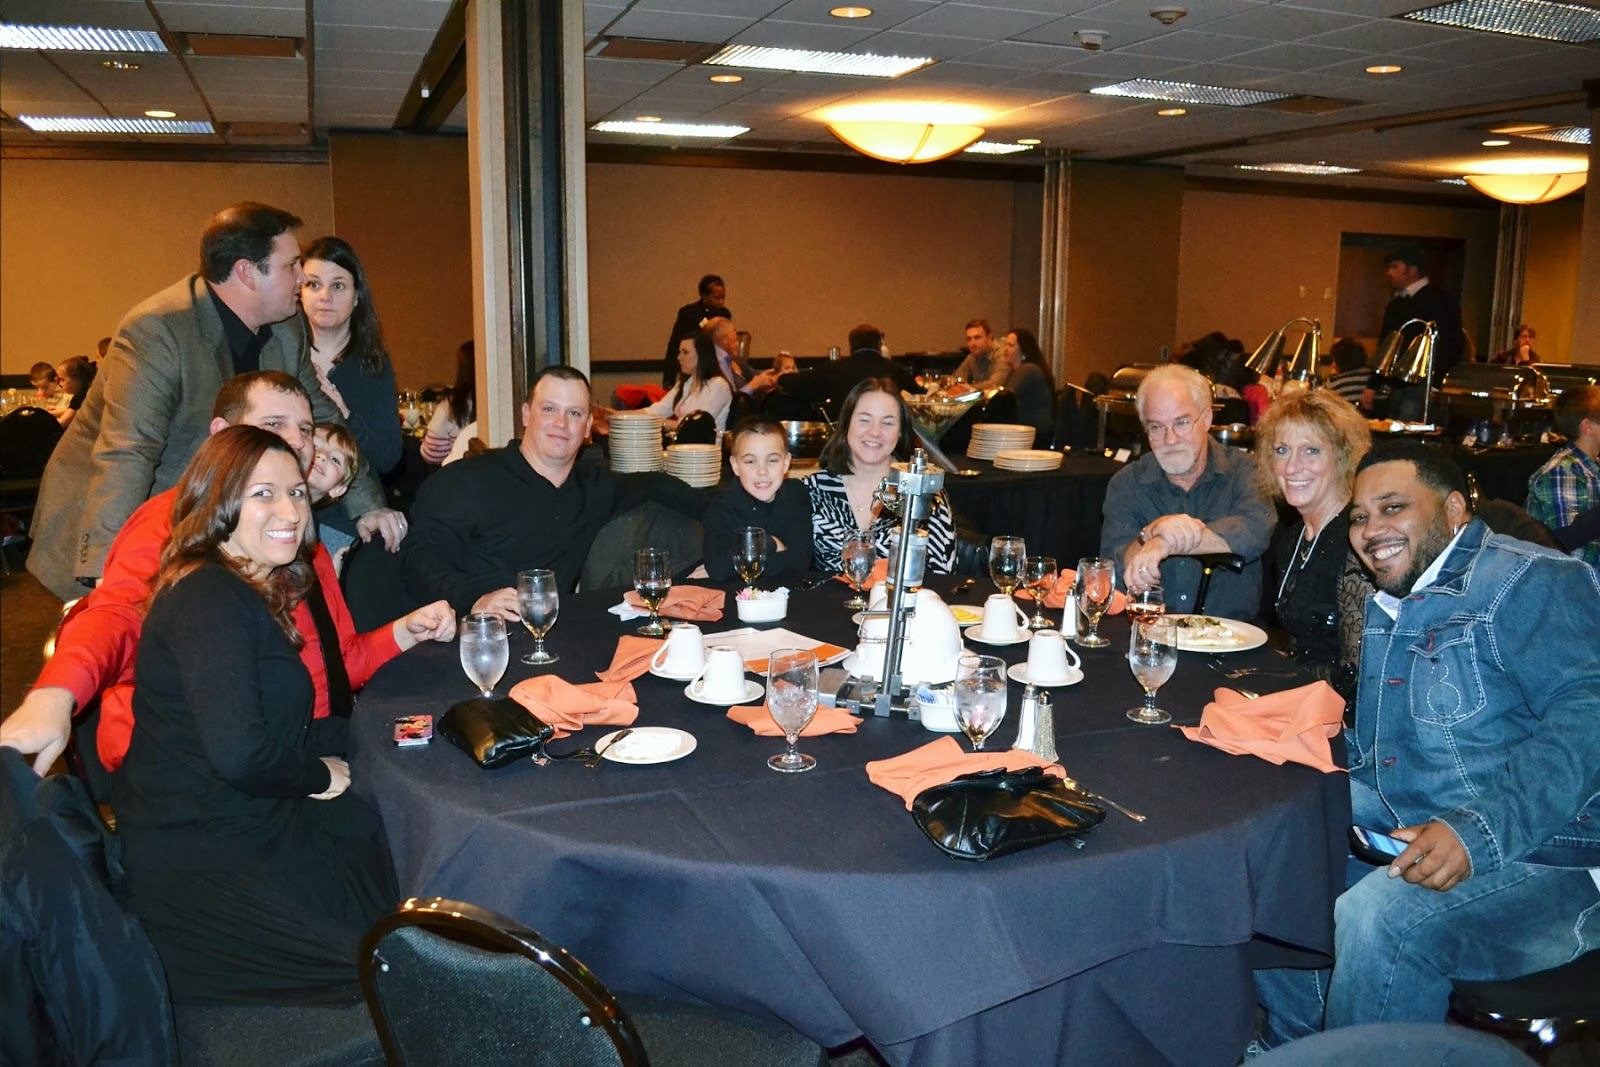 THE ORANGE ACADEMY : Furmanite Employee Reward Banquet - Hobart, IN USA